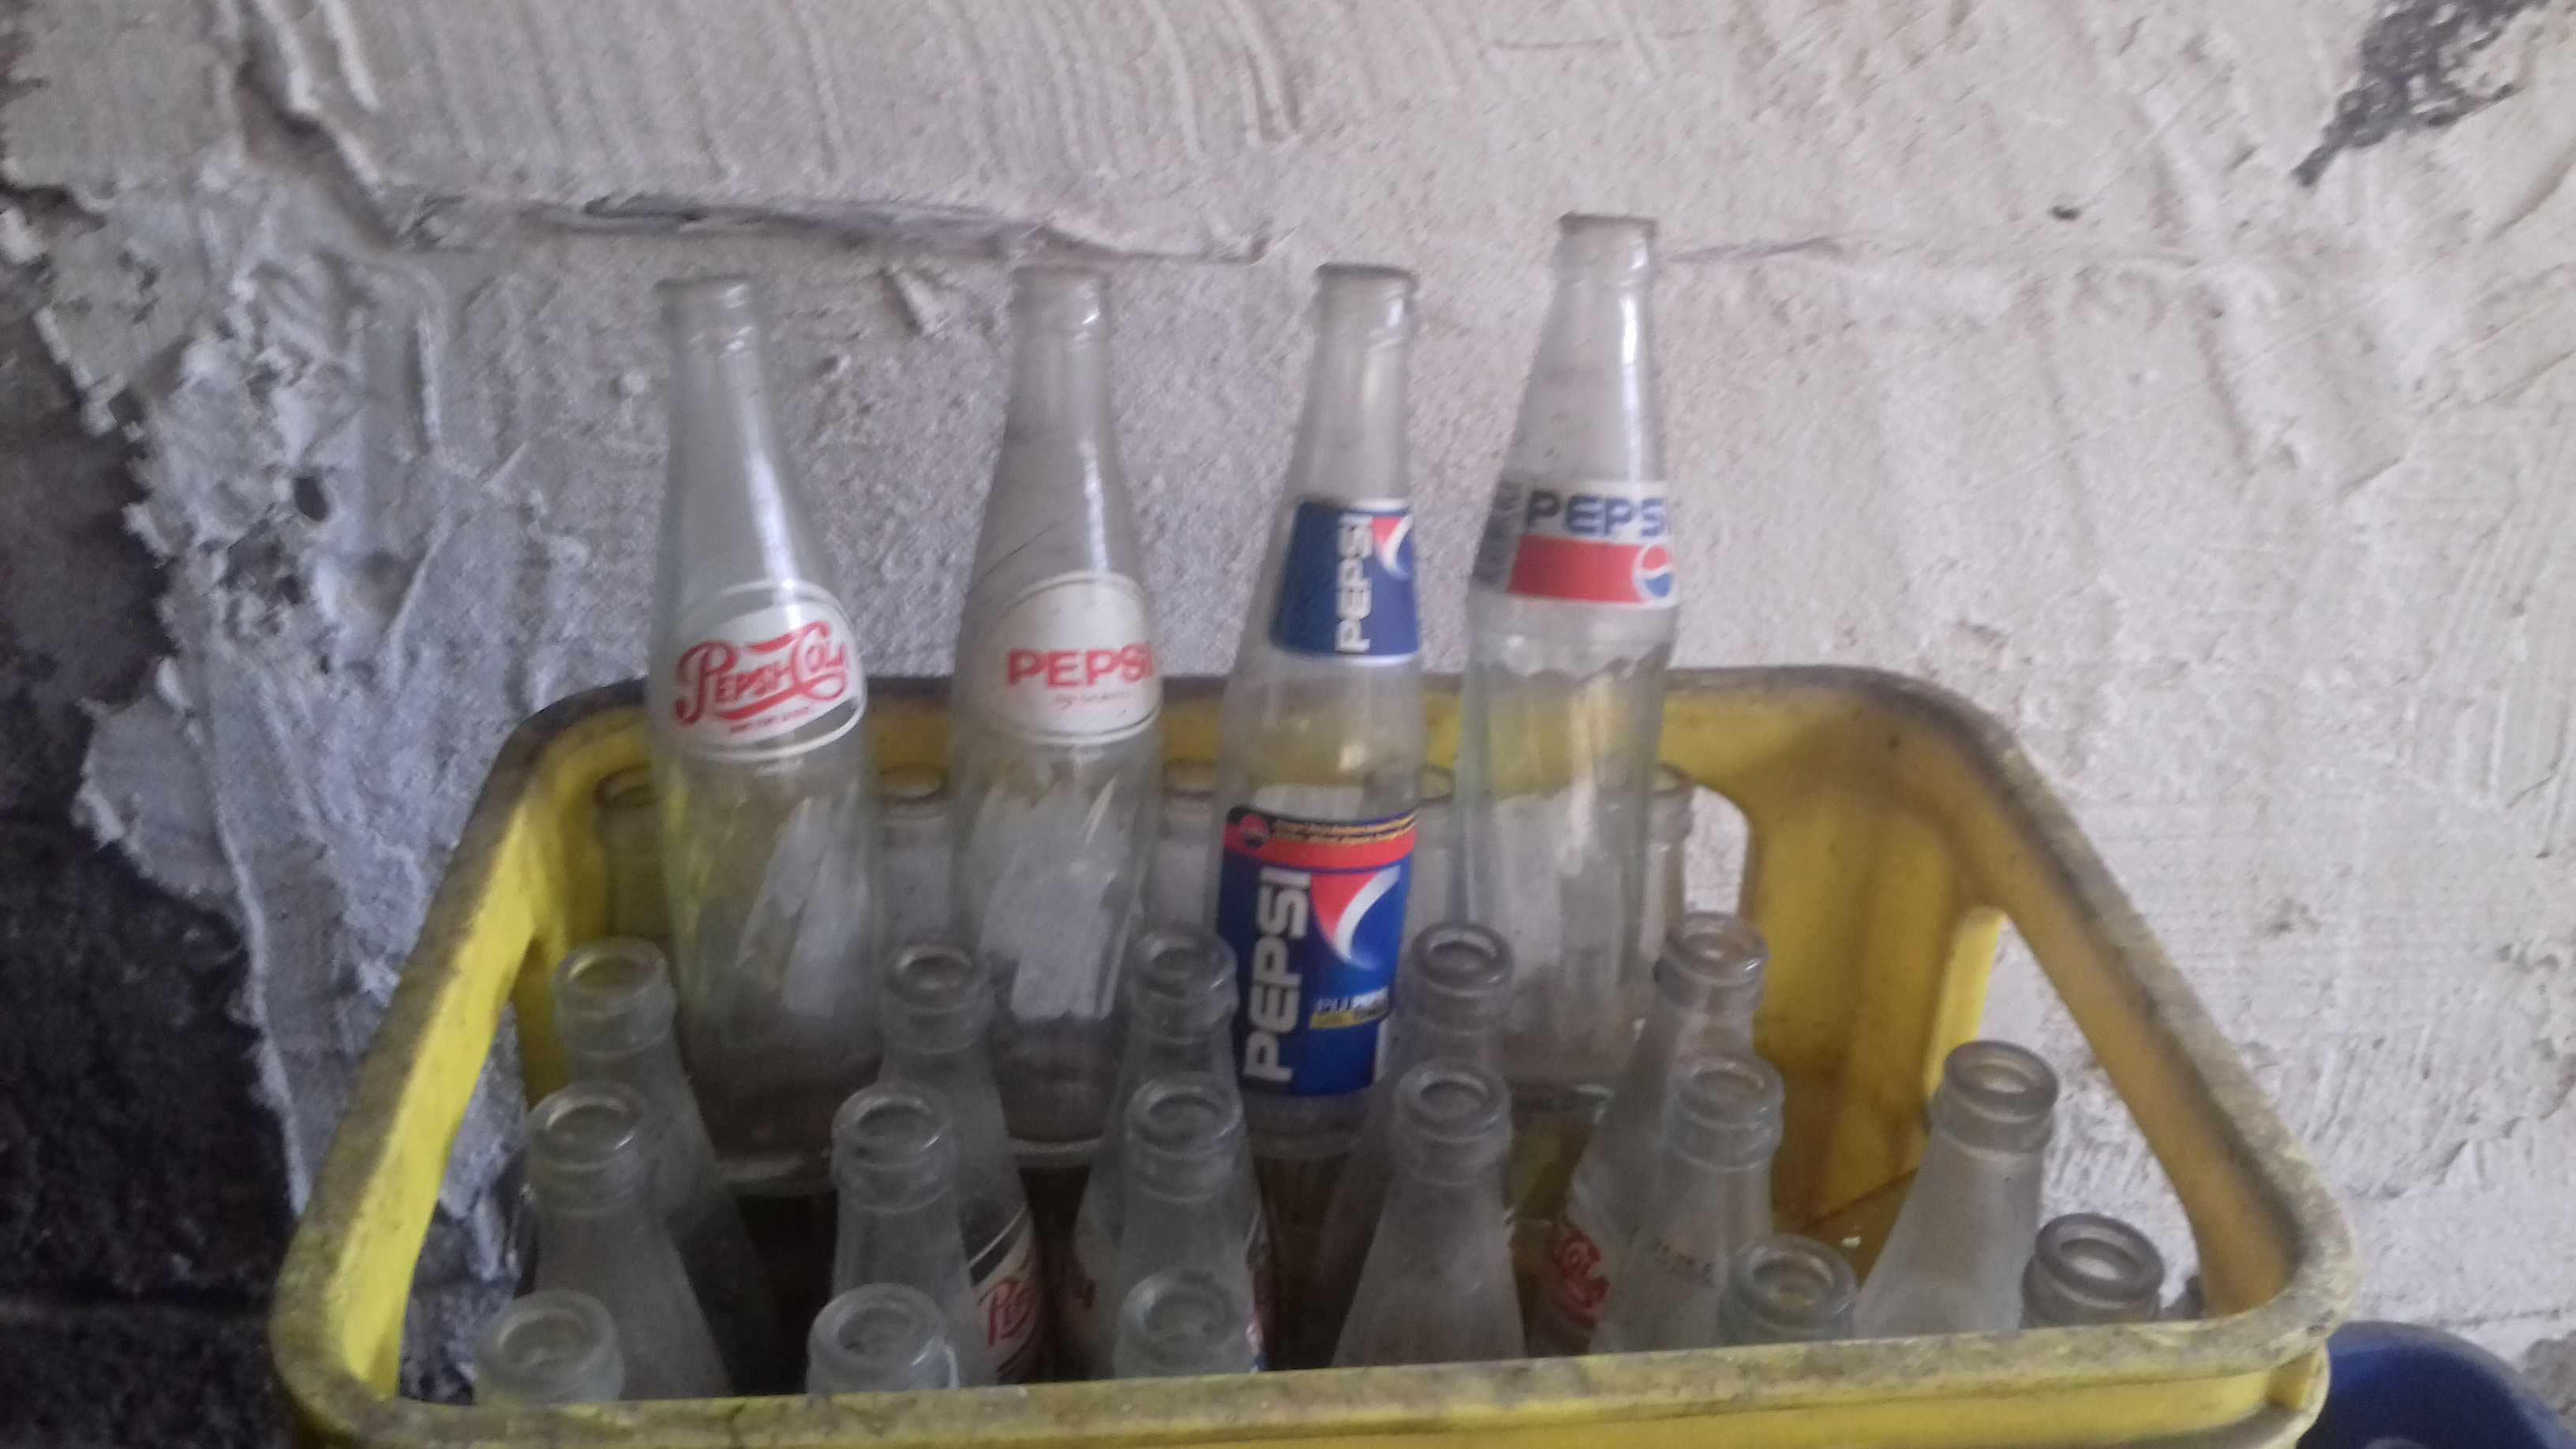 Stare butelki Pepsi . Pepsi - cola